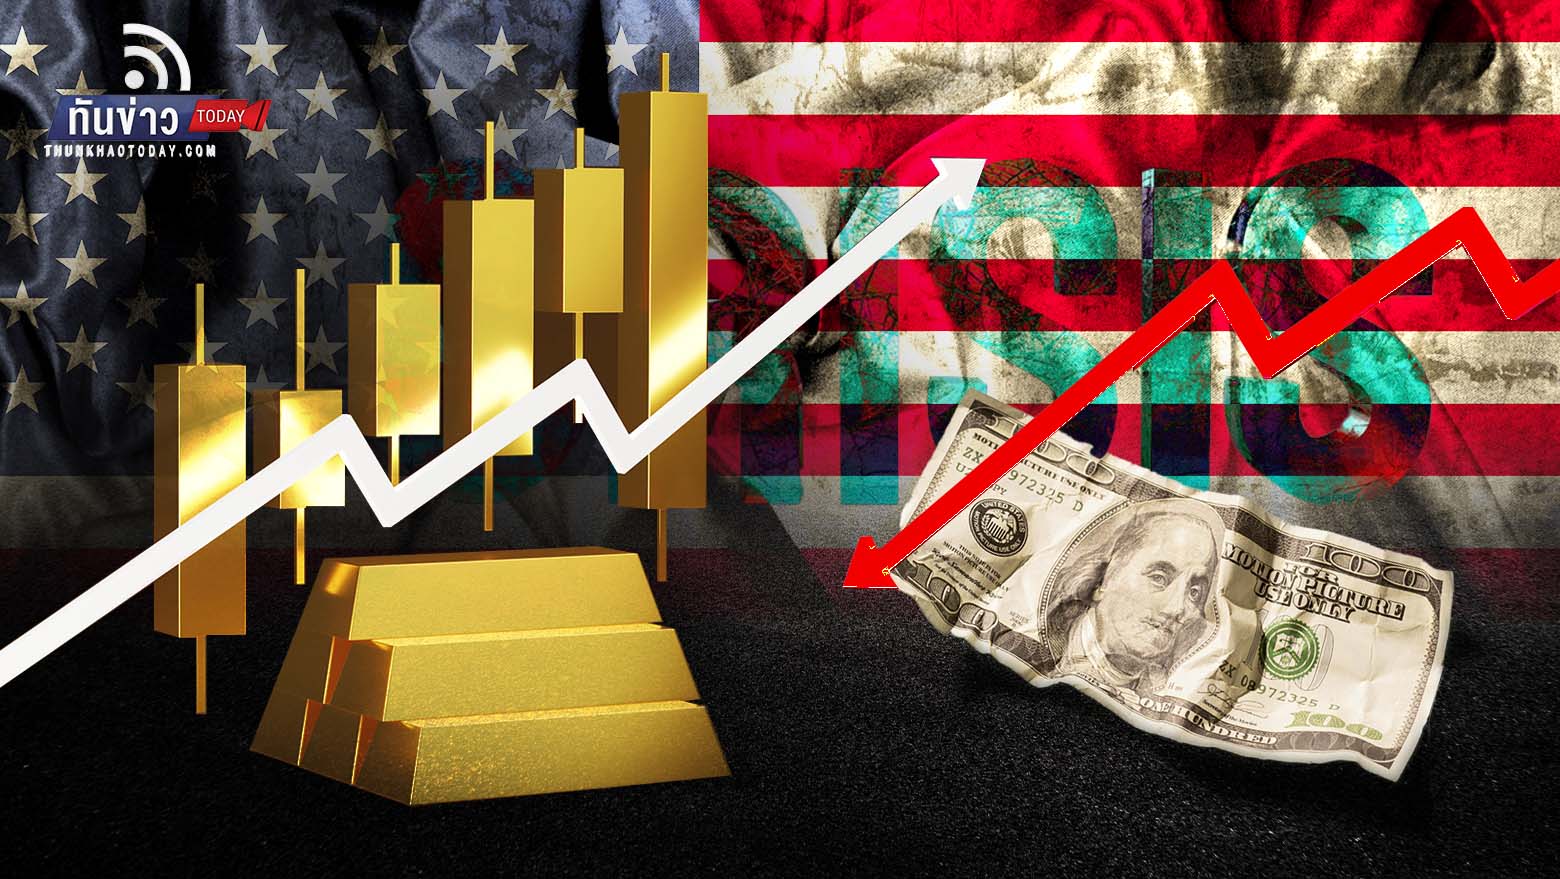 ทองคำราคาพุ่งทะลุ 1,900 ดอลลาร์  รับความผันผวนวิกฤตการเงินสหรัฐฯ